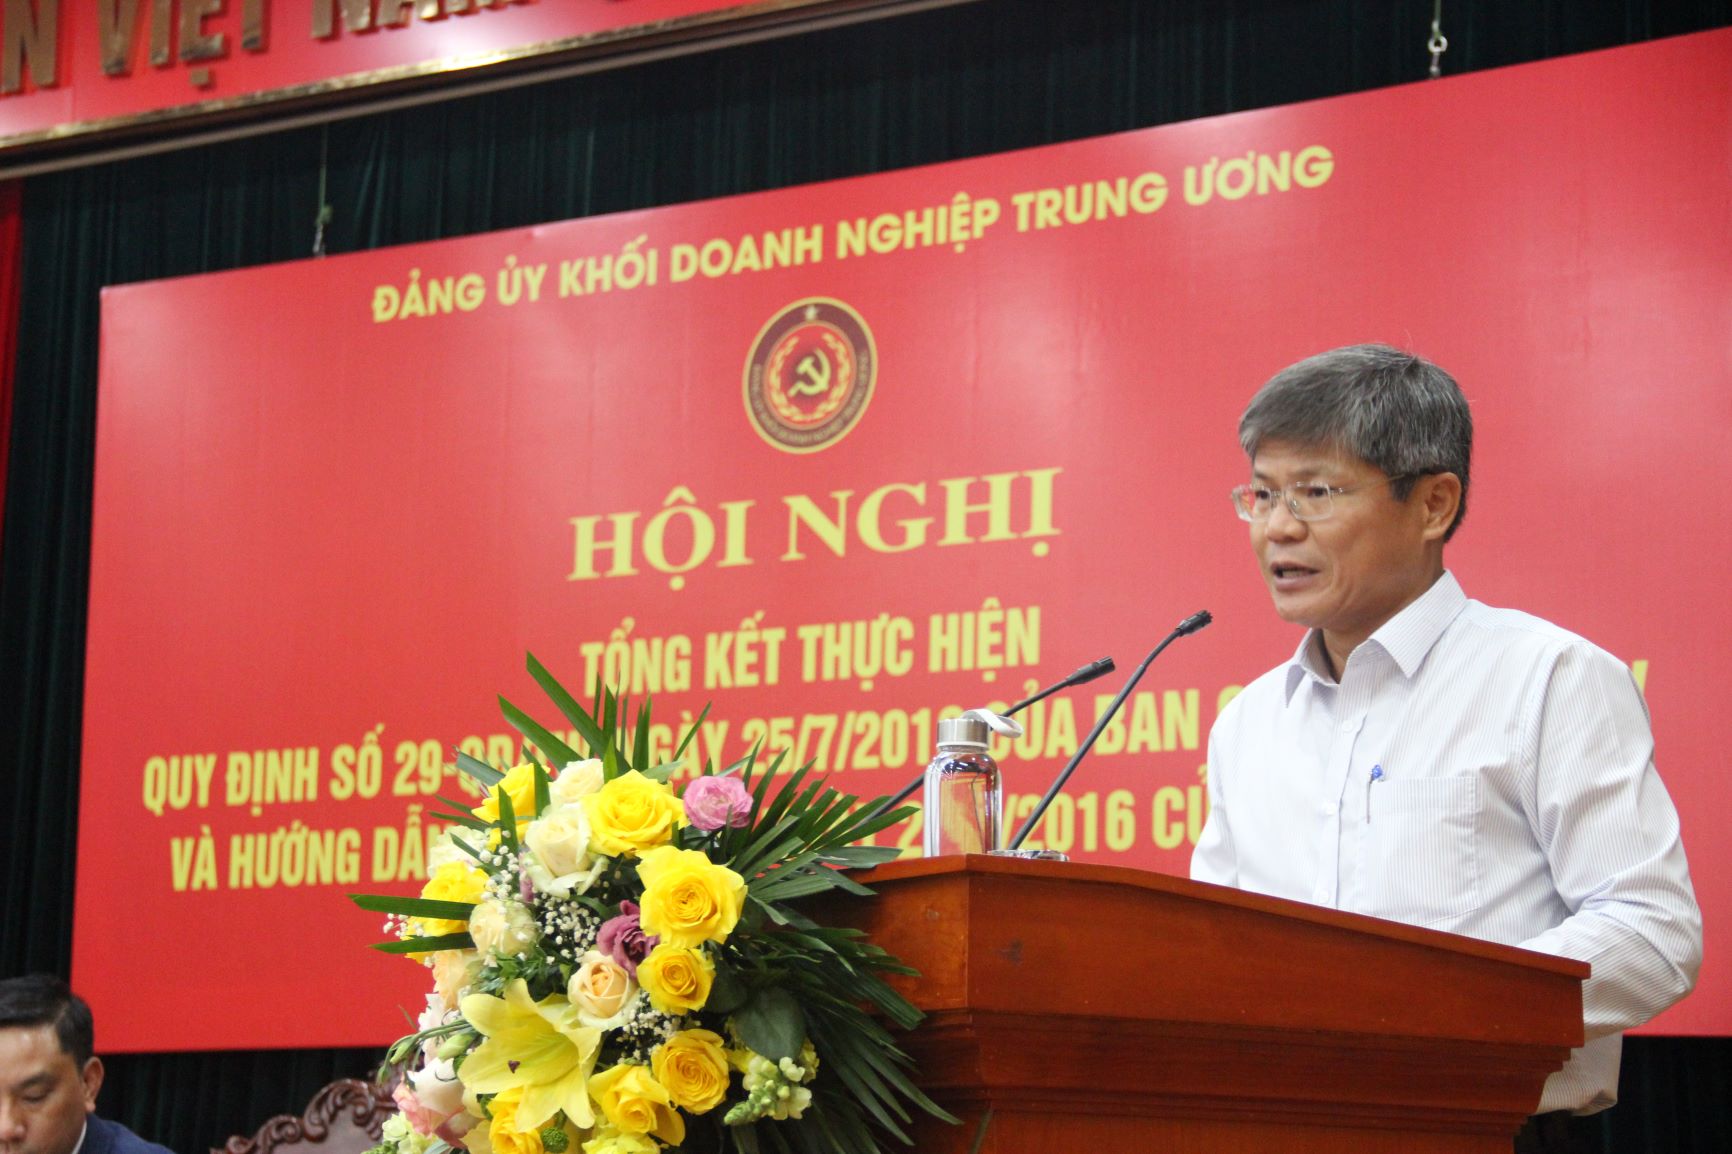 Đồng chí Trần Công Kha, Ủy viên BTV Đảng ủy Khối, Bí thư Đảng ủy, Phó Tổng Giám đốc Tập đoàn CN Cao su Việt Nam trình bày tham luận.